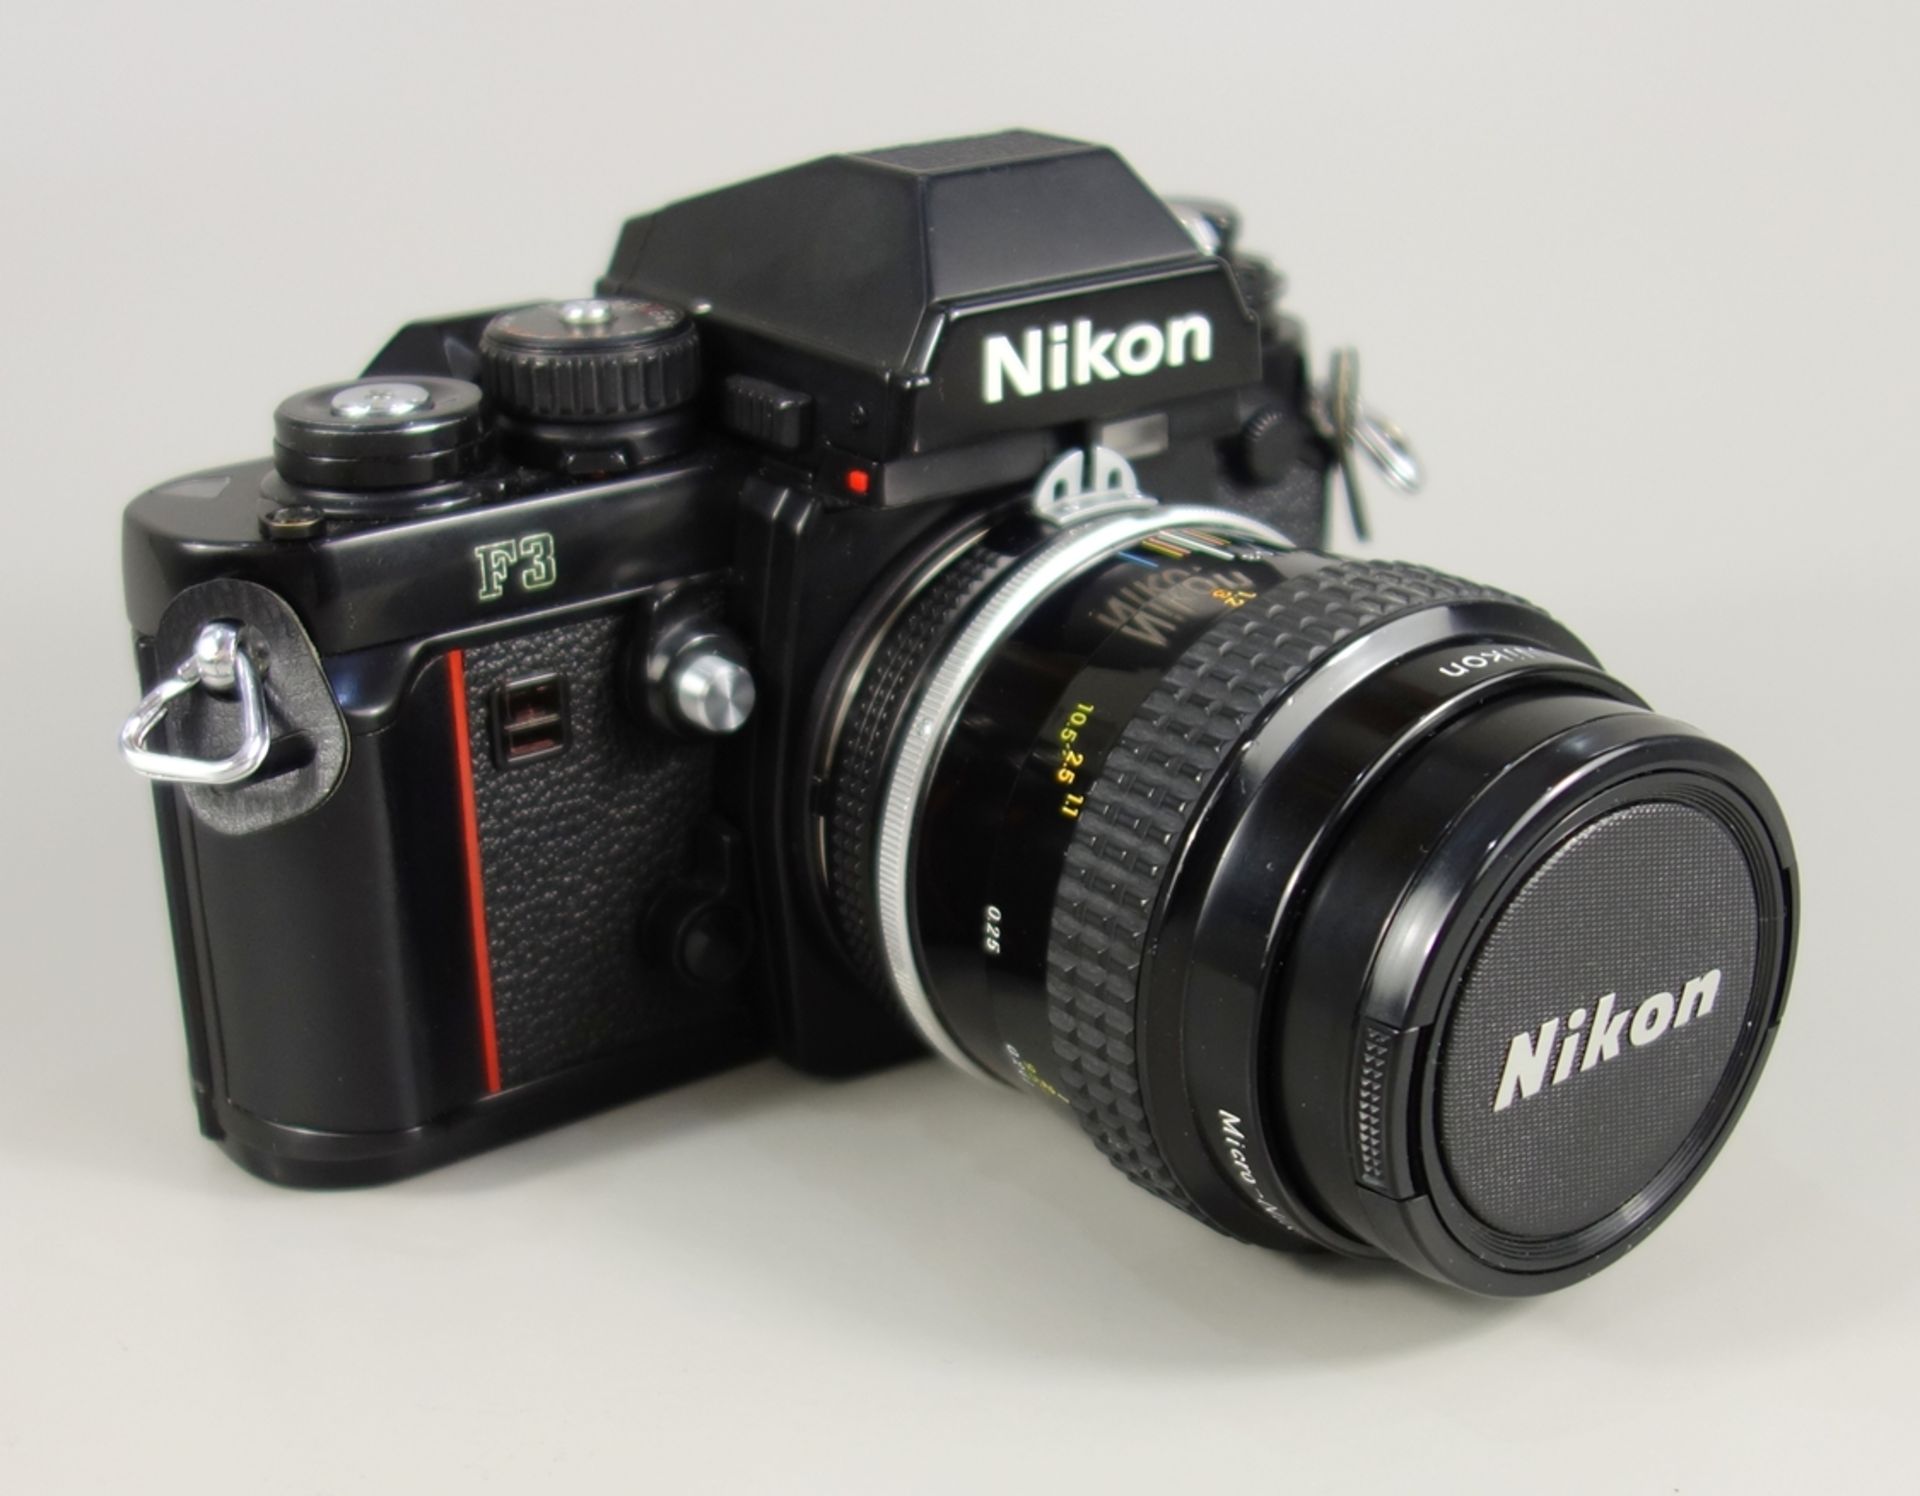 Nikon F3, Spiegelreflexkamera, schwarz, 1980er Jahre, Serien-Nr. 1212899, mit Objektiv Nikon Micro-